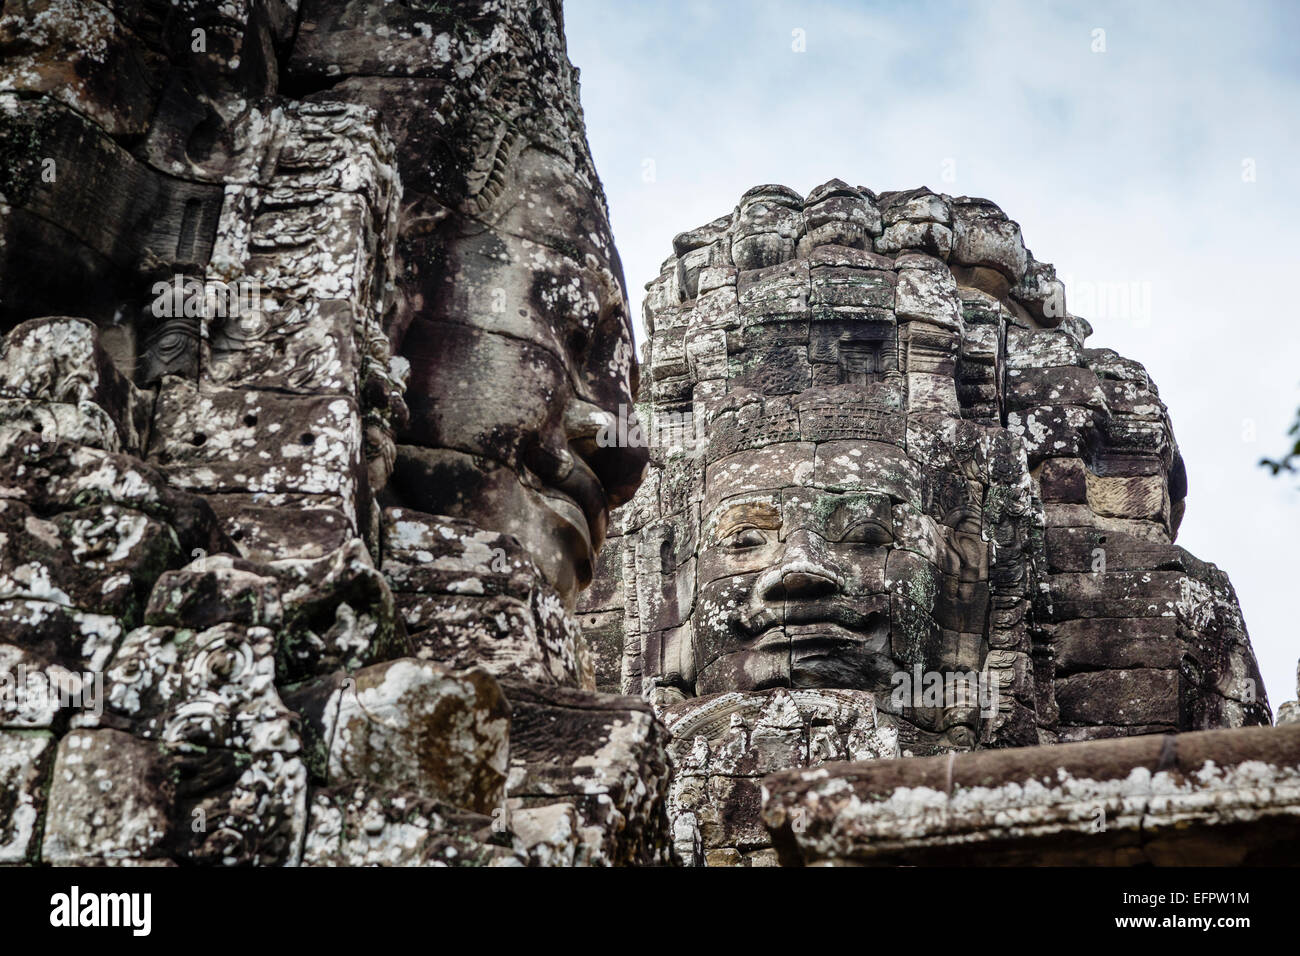 The Bayon Temple at Angkor Thom, Angkor, Cambodia. Stock Photo